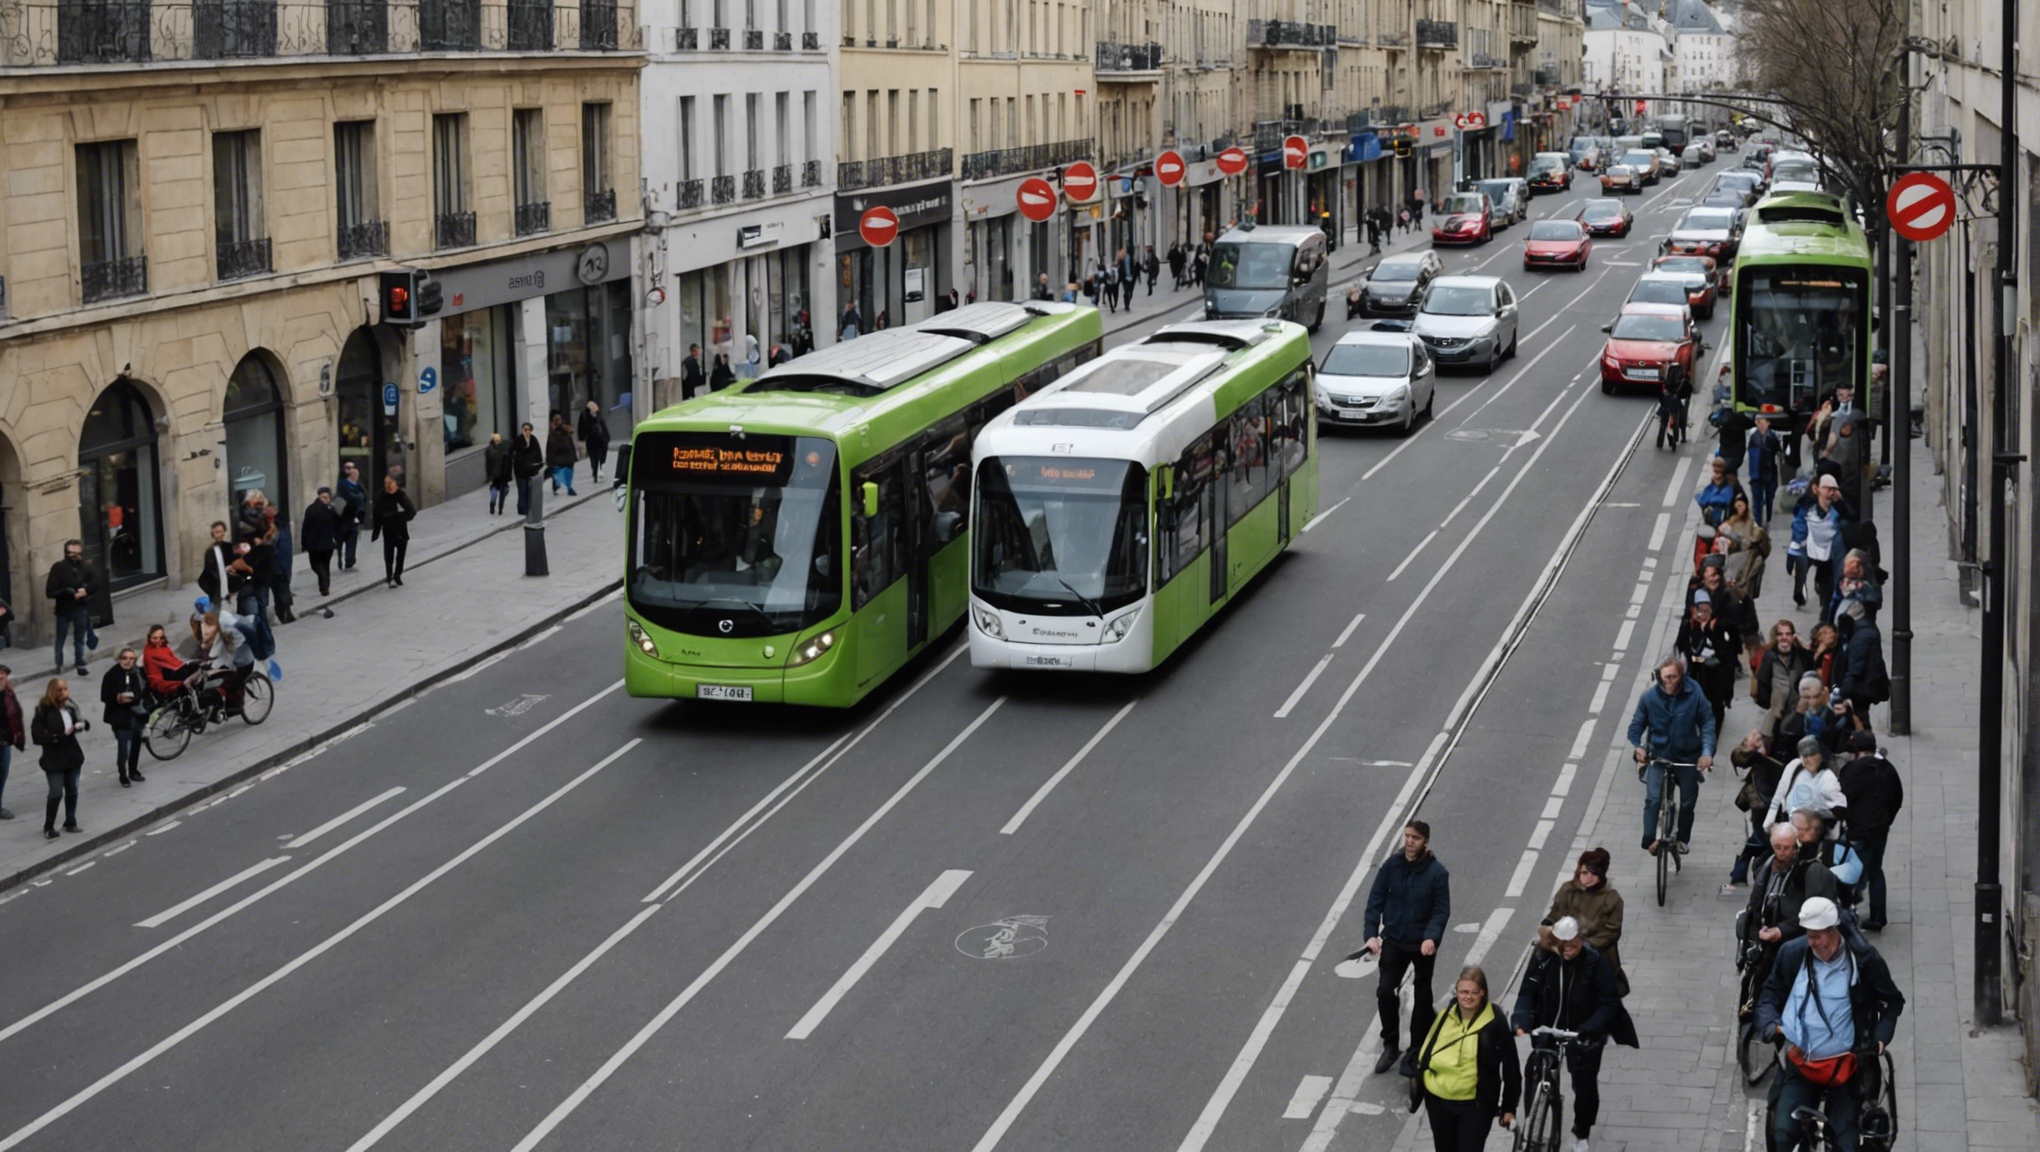 découvrez comment le transport collectif contribue à améliorer la mobilité urbaine et à réduire la congestion dans les villes.